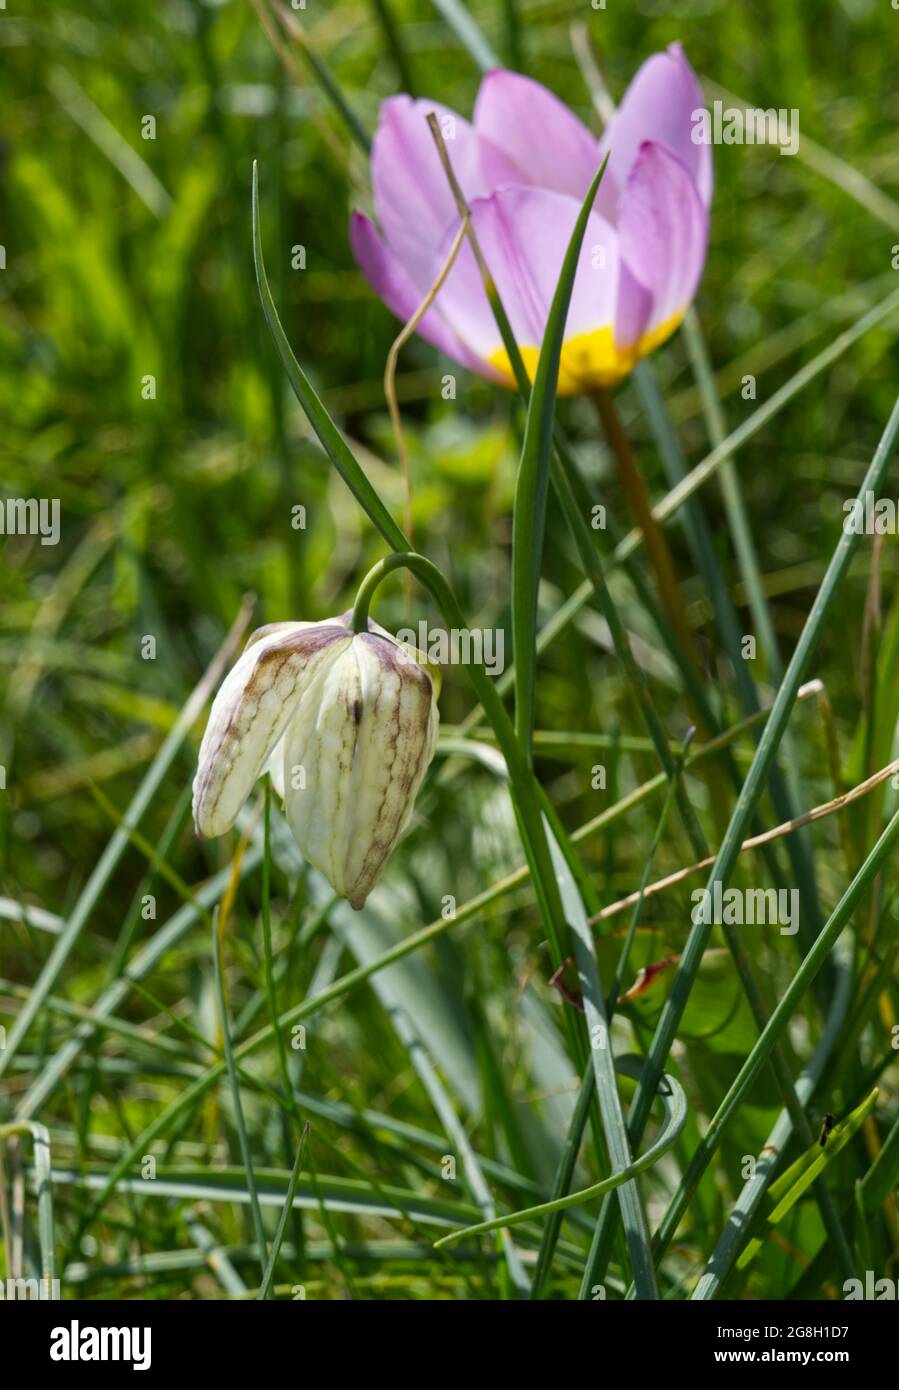 Fritillare à tête de serpent blanc (Fritilaria meleagris) et tulipe Bakerii Lilac merveille pousser dans l'herbe dans un jardin de printemps avril Royaume-Uni Banque D'Images